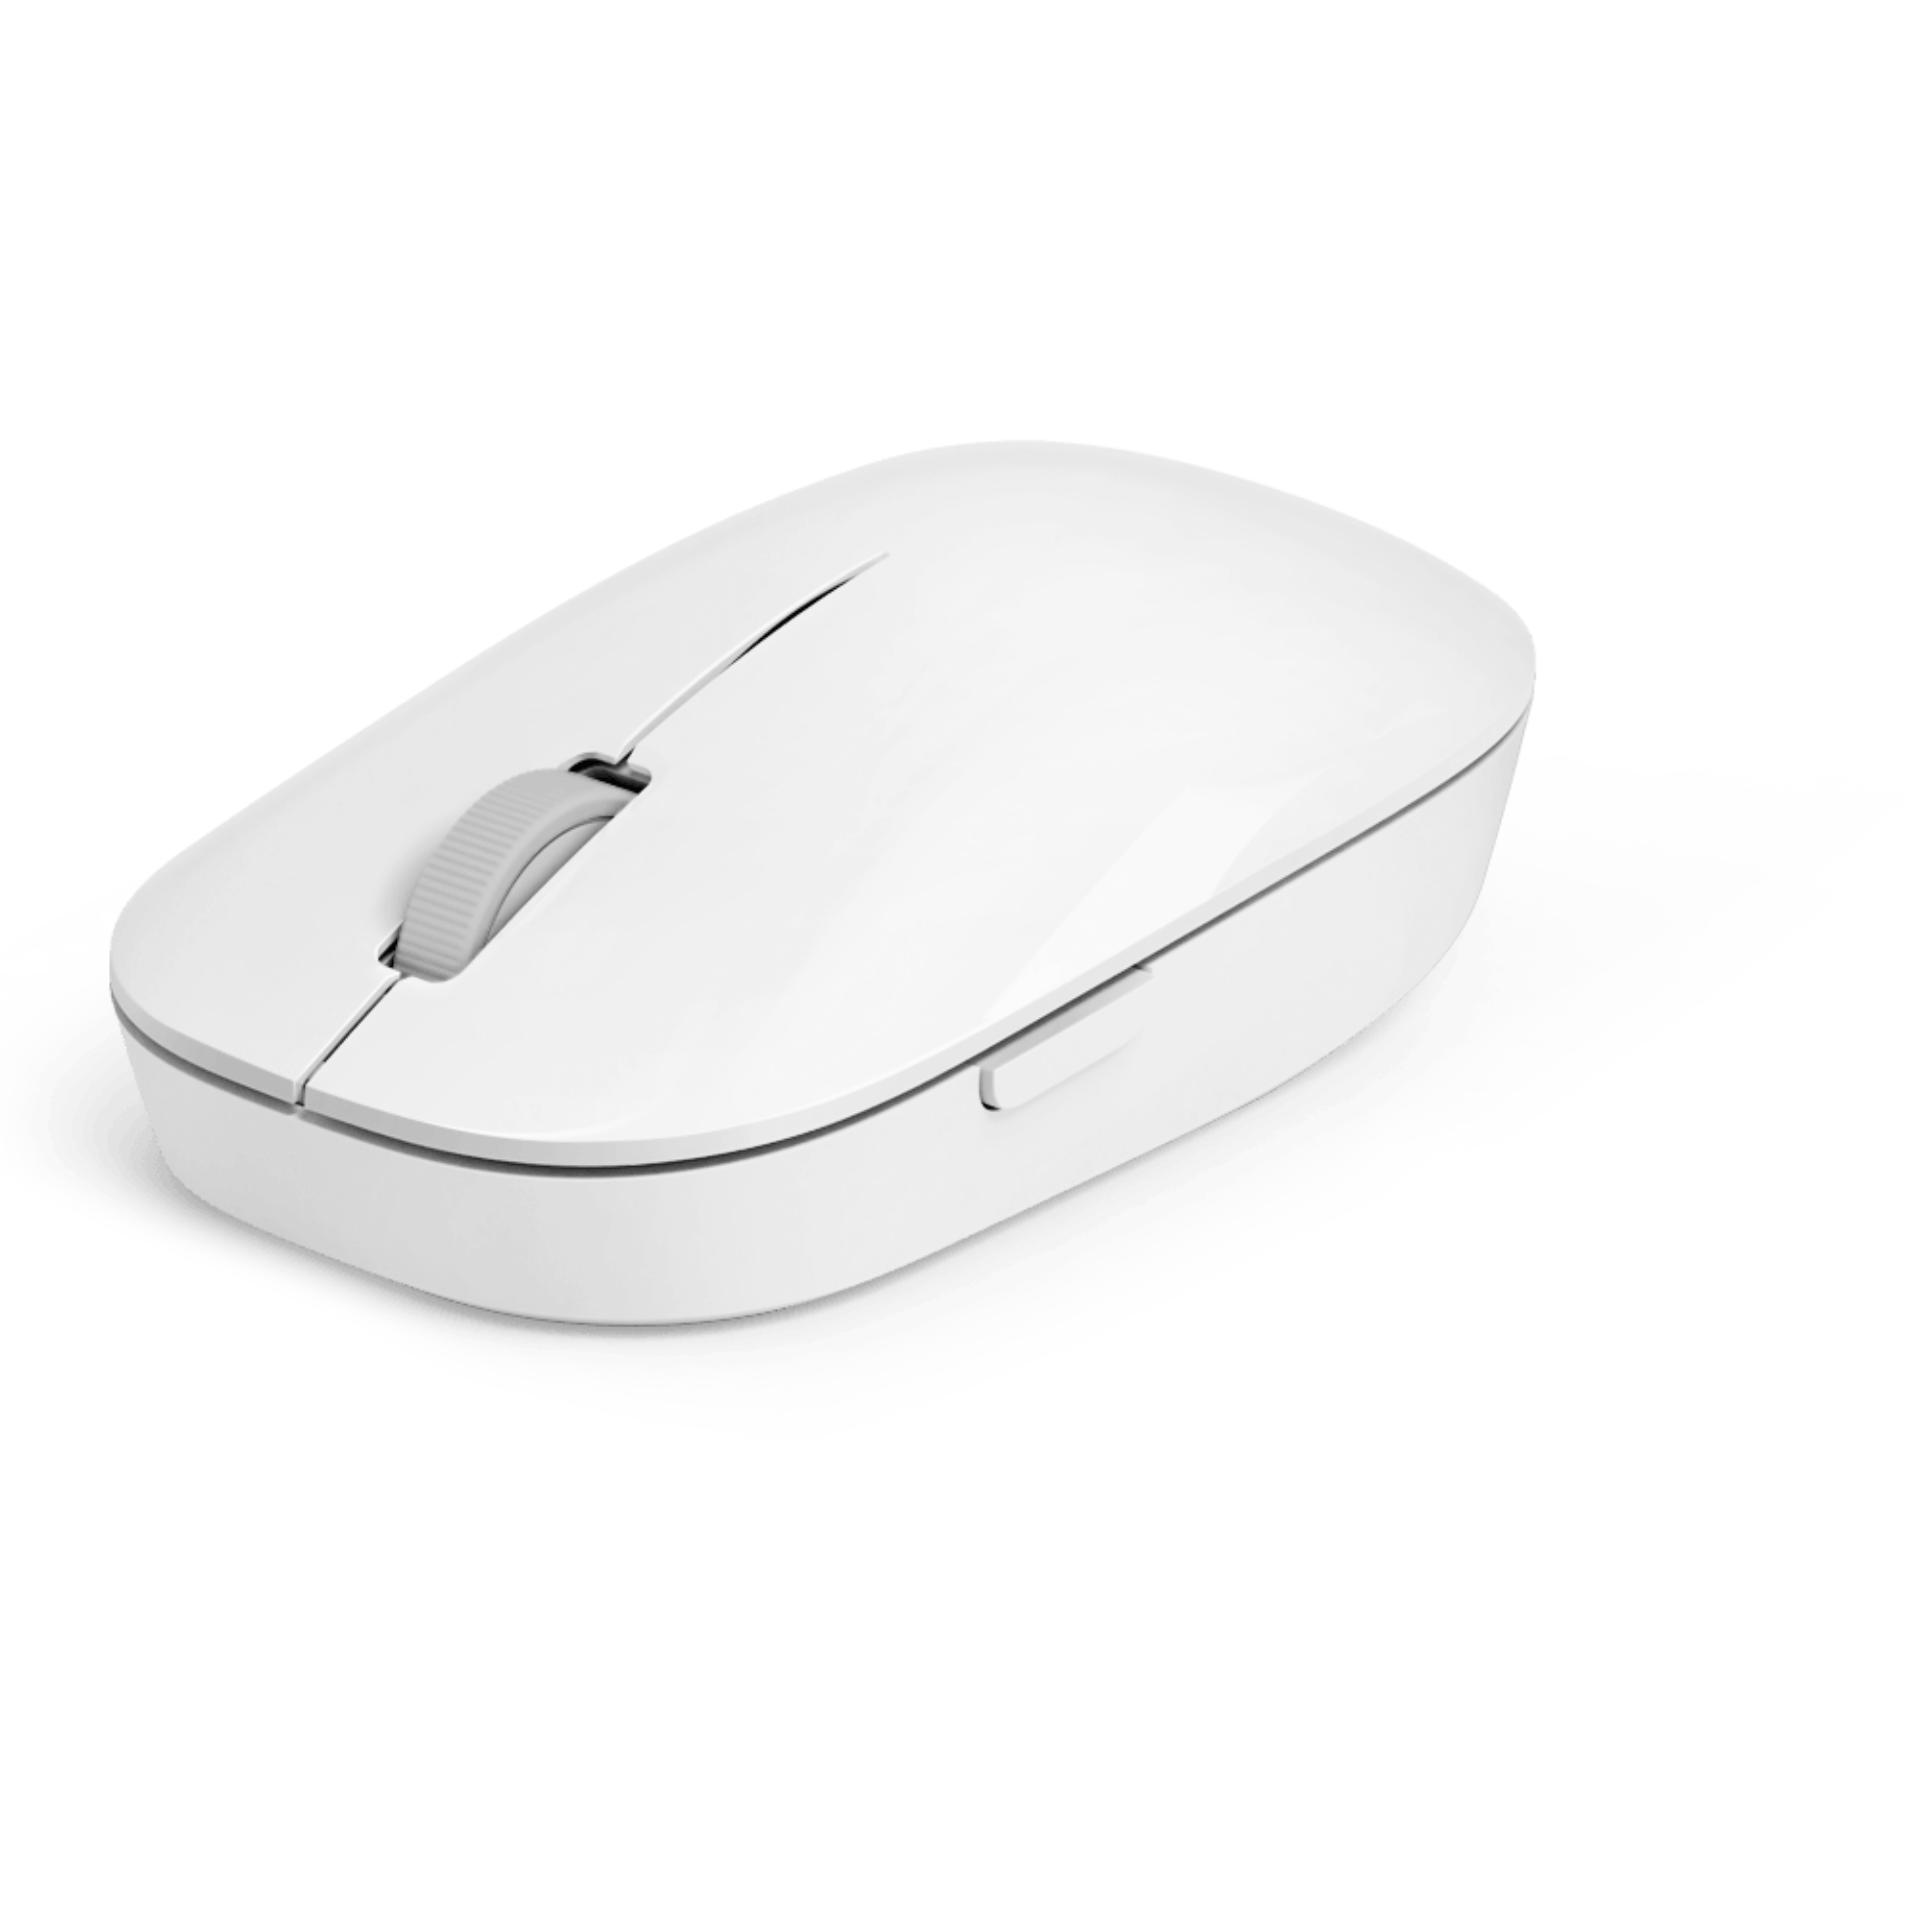 Chuột không dây Xiaomi Mi Wireless Mouse - Hãng phân phối chính thức